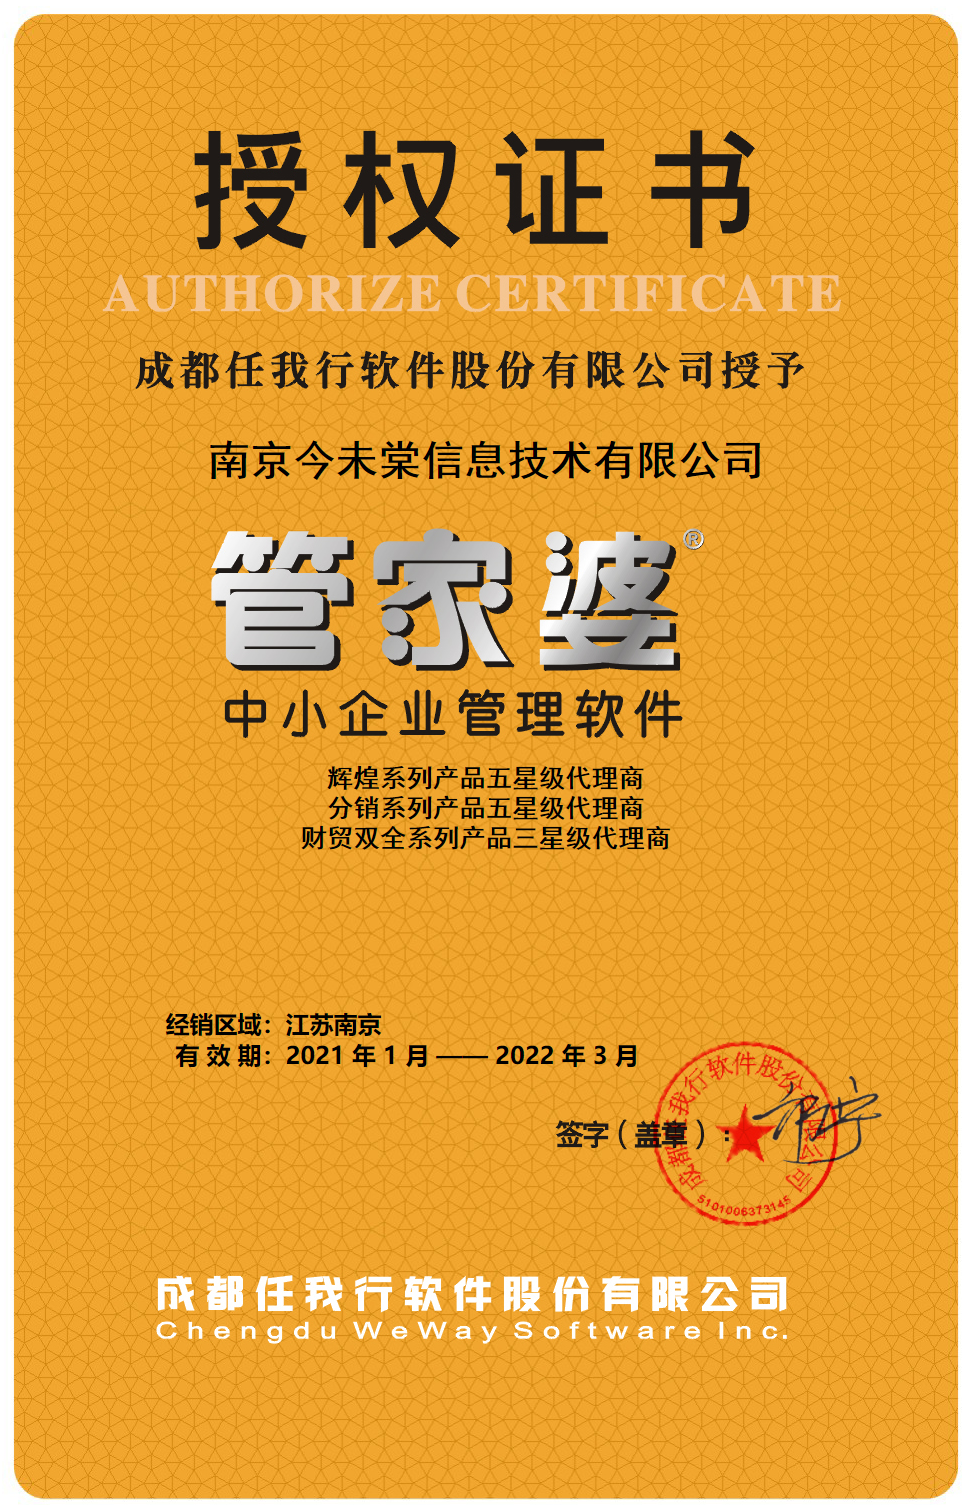 南京管家婆2021授权证书